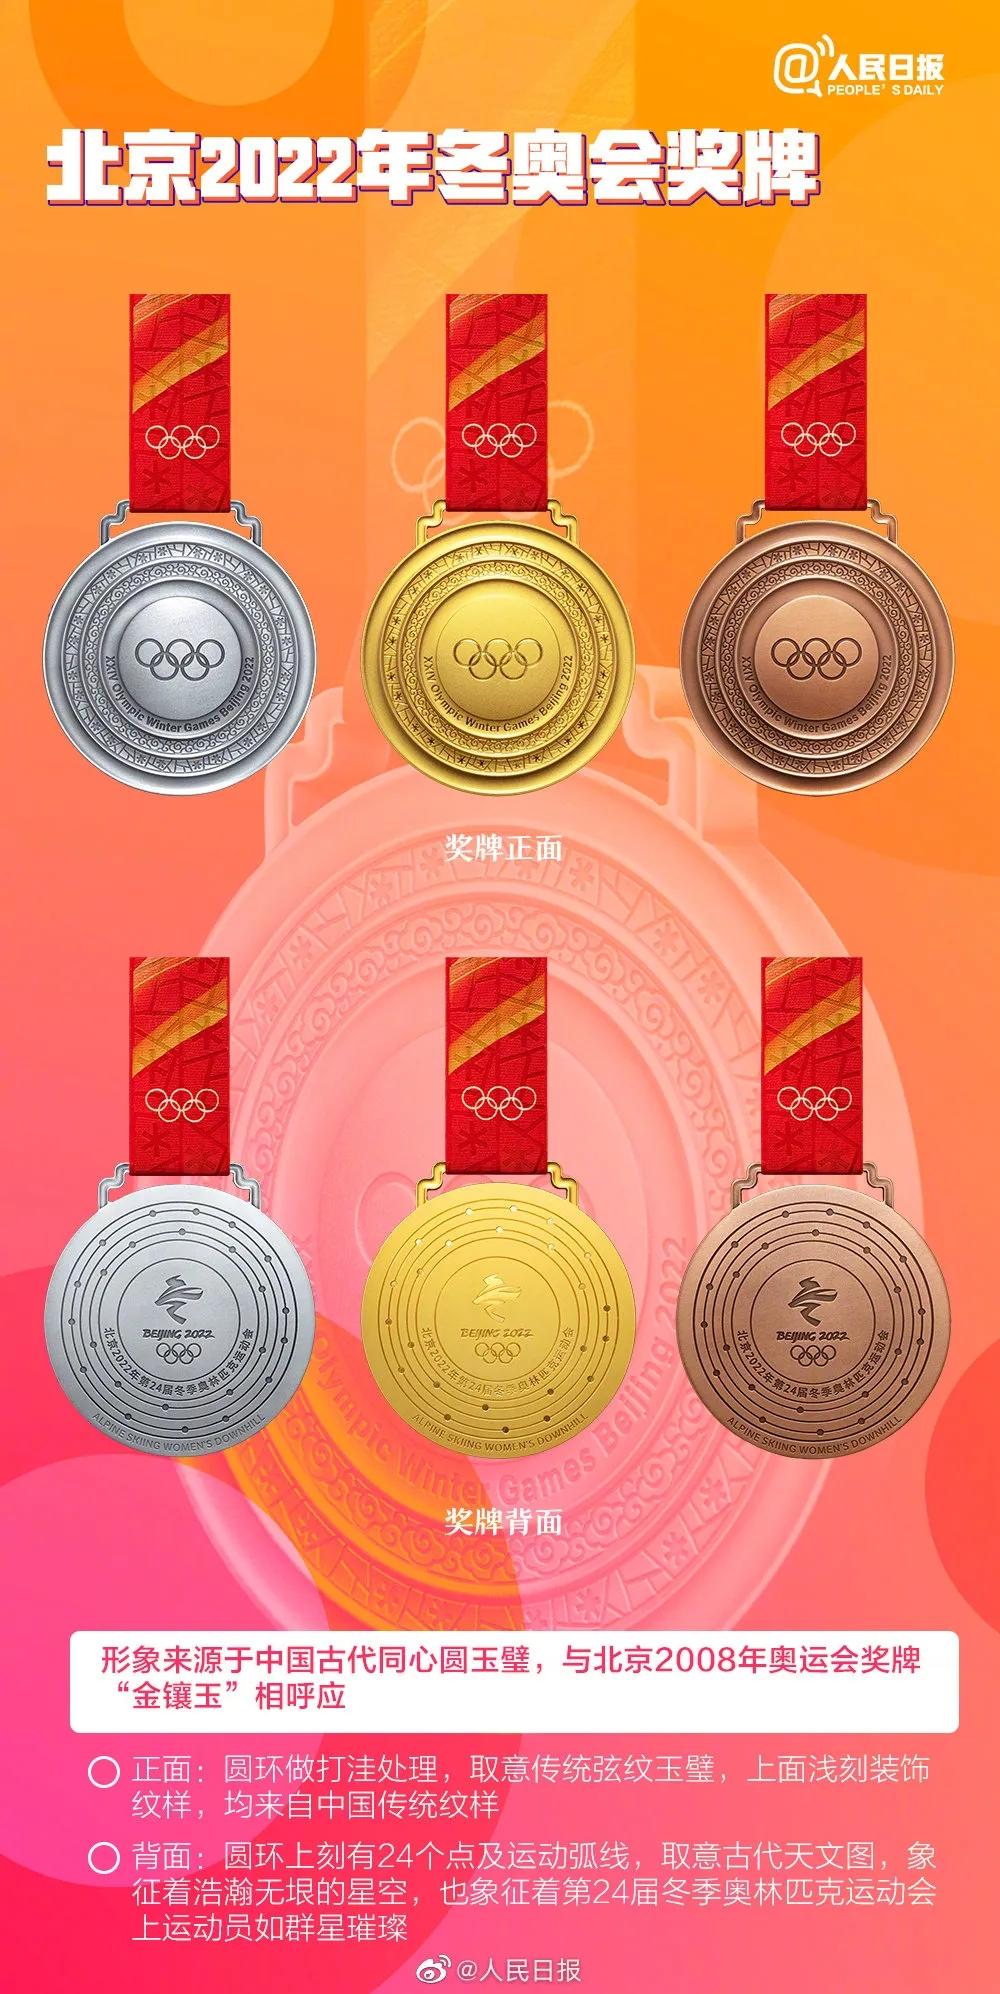 奖牌背面北京2022年冬奥会奖牌侧面奖牌形象来源于中国古代同心圆玉璧